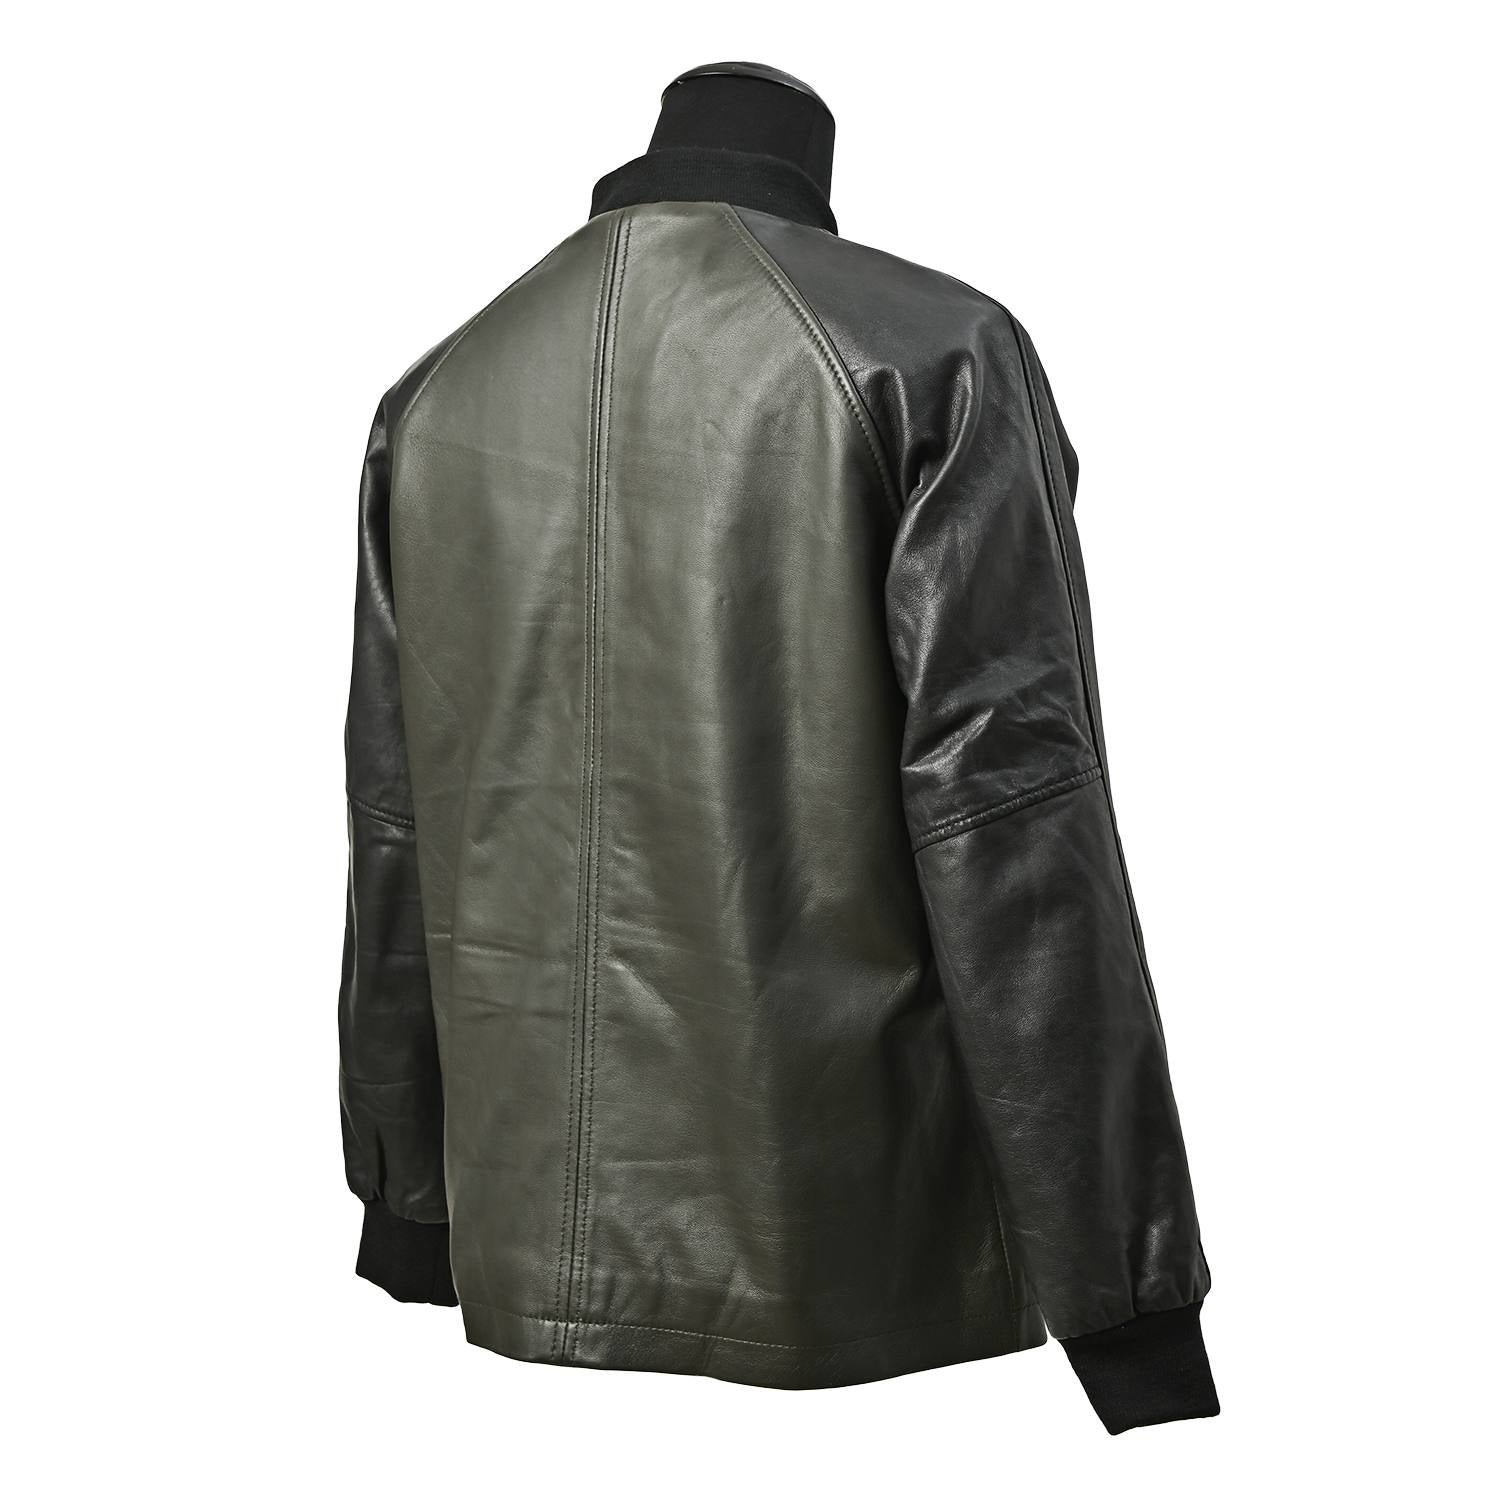 Retro Pharaoh Jacket Style/RIDEZ Original Leather Jacket This is 